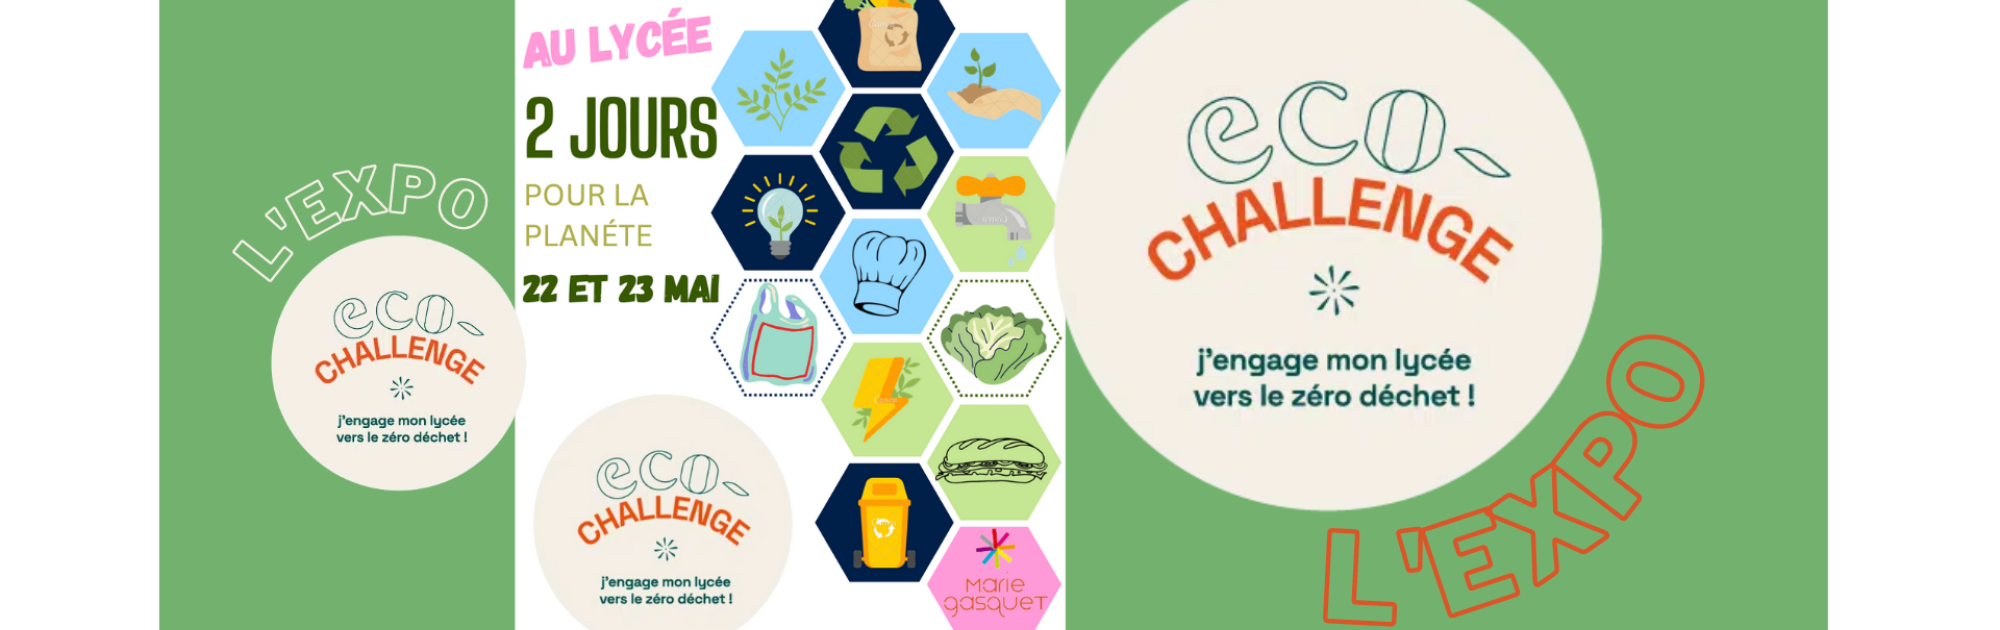  Eco-challenge: l'EXPO